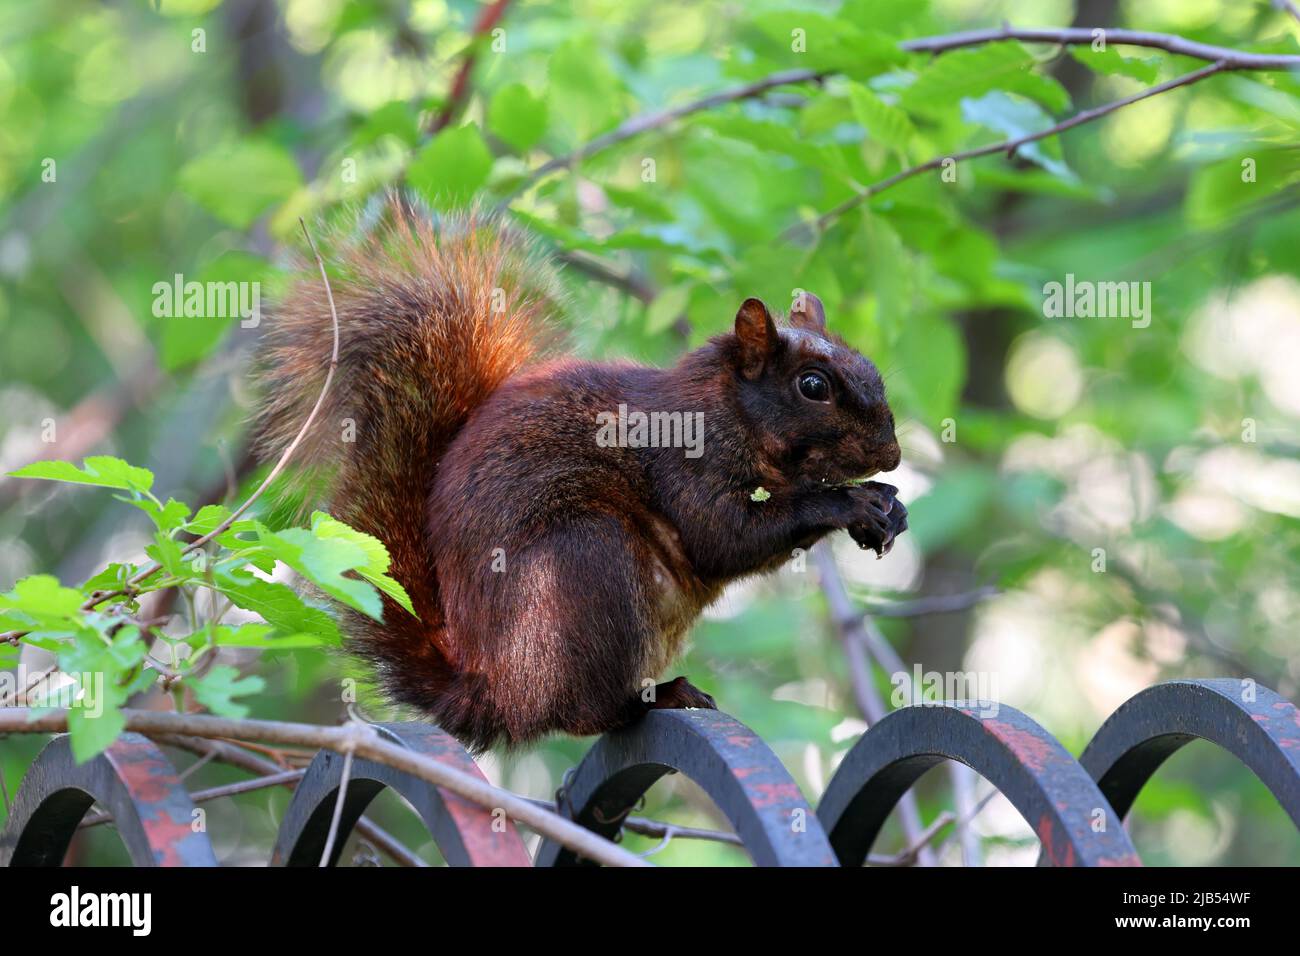 Ein weibliches Ostfuchshörnchen (Sciurus niger) mit rötlich-brauner und schwarzer Fellfarbe auf einem Zaun, der eine Baumknospe frisst, Bronx, New York. Schwarzes Eichhörnchen Stockfoto